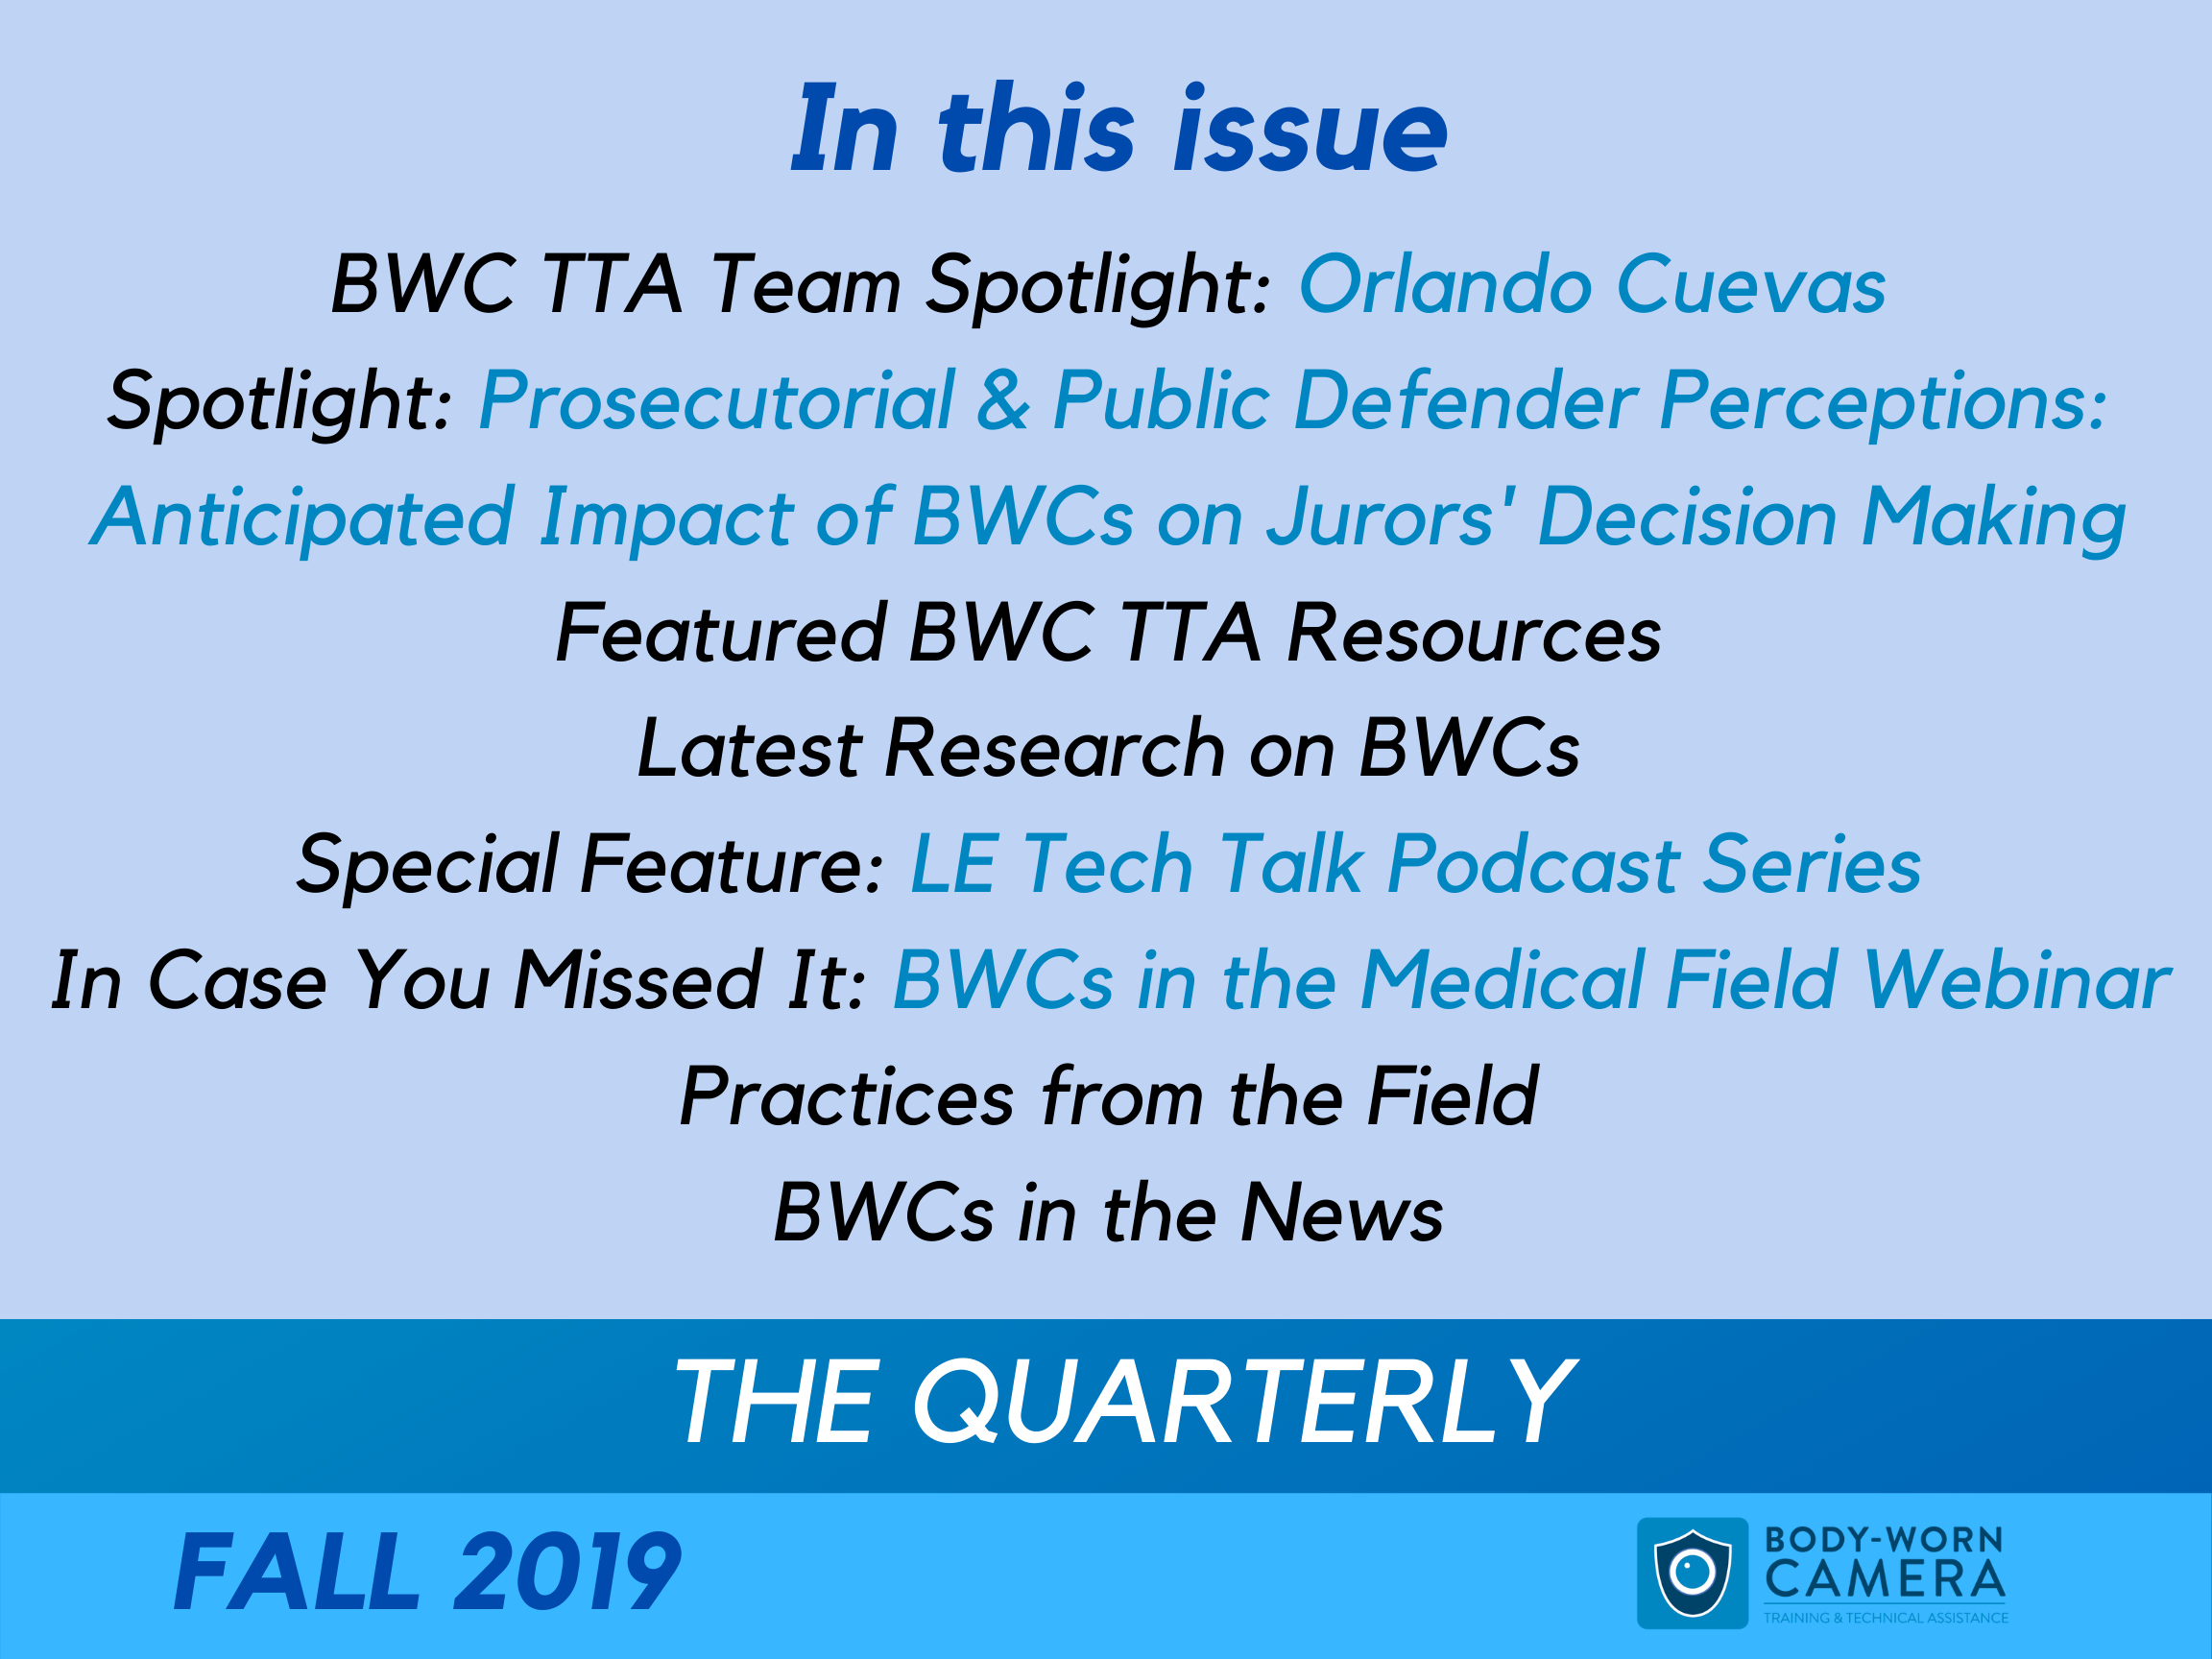 Fall 2019 Quarterly Newsletter